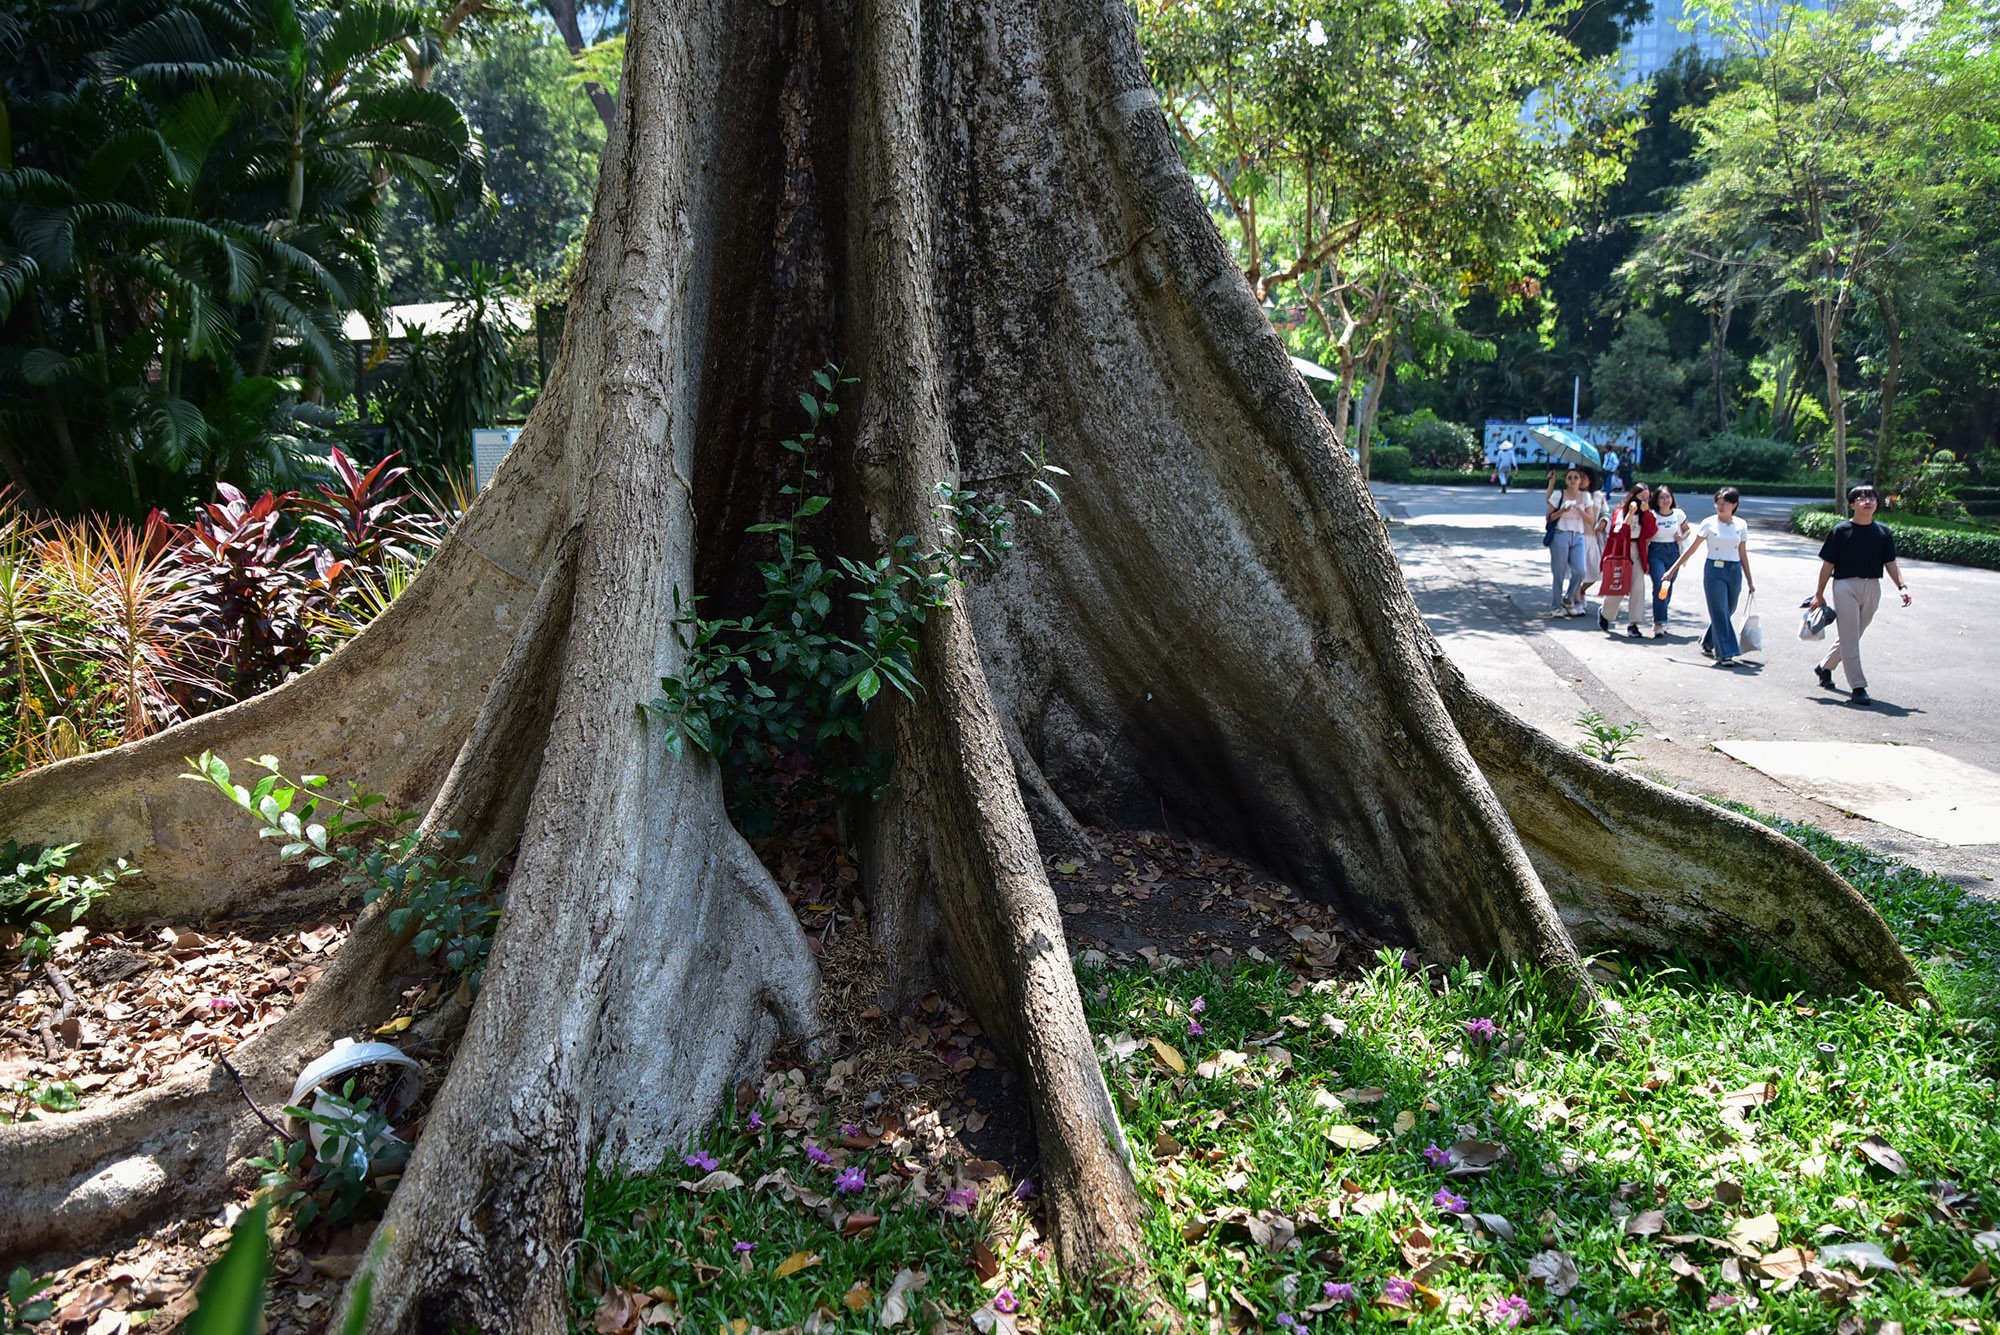 Theo một nhân viên sở thú, cây có bộ rễ bạch đồ sộ rất đẹp nên thường được nhiều du khách ưa thích chụp hình. Loài cây này phân bố nhiều ở Ấn Độ, Mianma, Indonesia, Malaysia… Ở Việt Nam cây có mặt ở các tỉnh miền núi phía Bắc như: Lai Châu;&nbsp;Sơn La;…